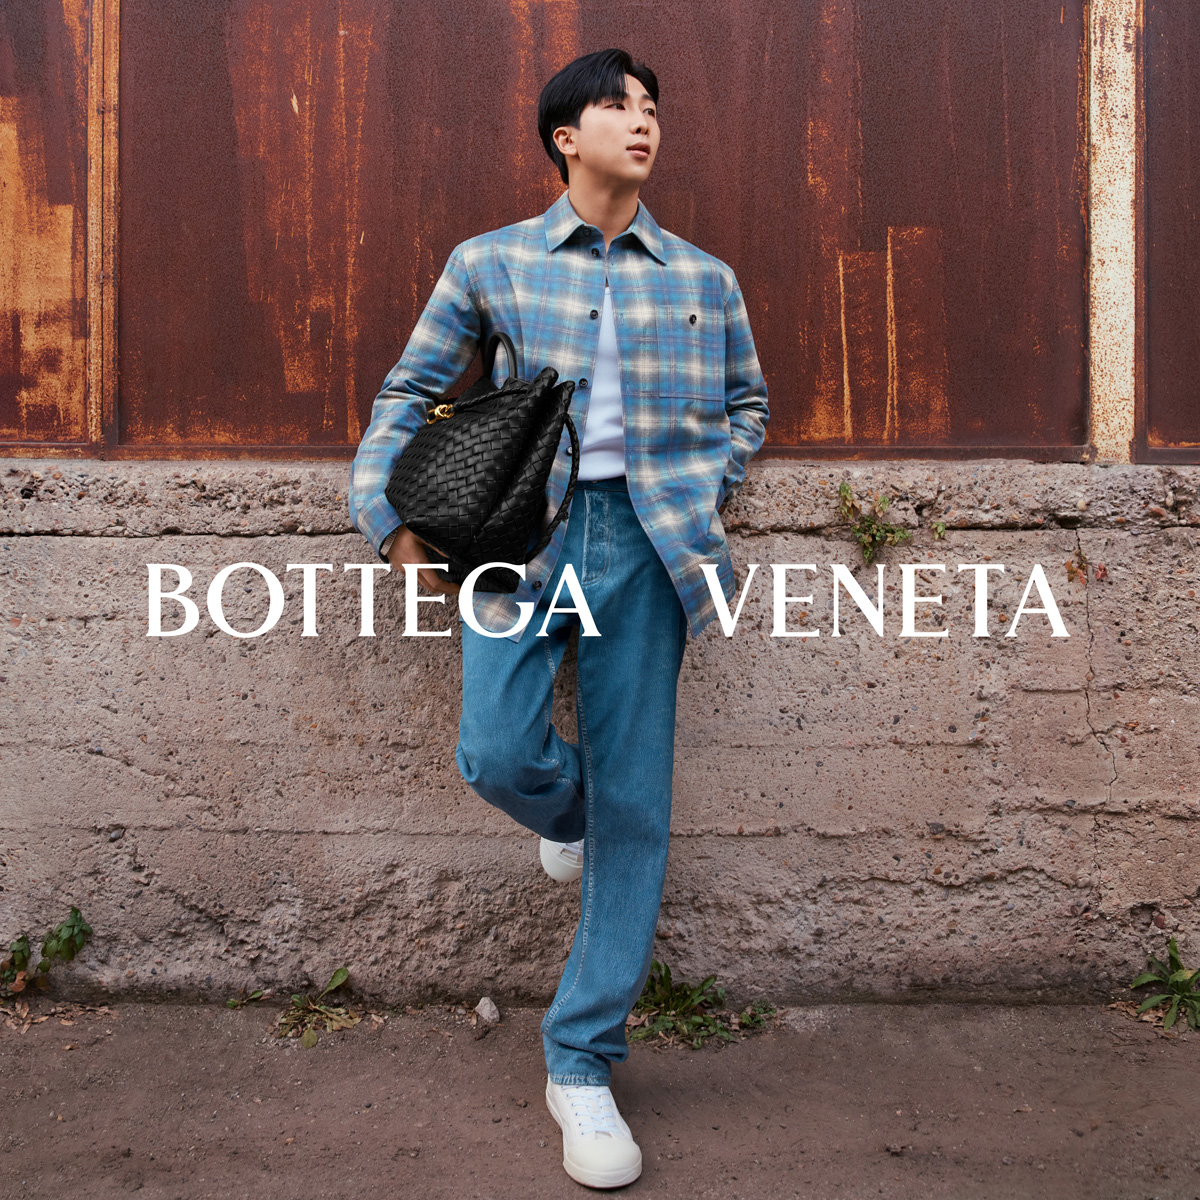 BTSのRMが「ボッテガ・ヴェネタ」の新ファミリーに 新ビジュアルを公開